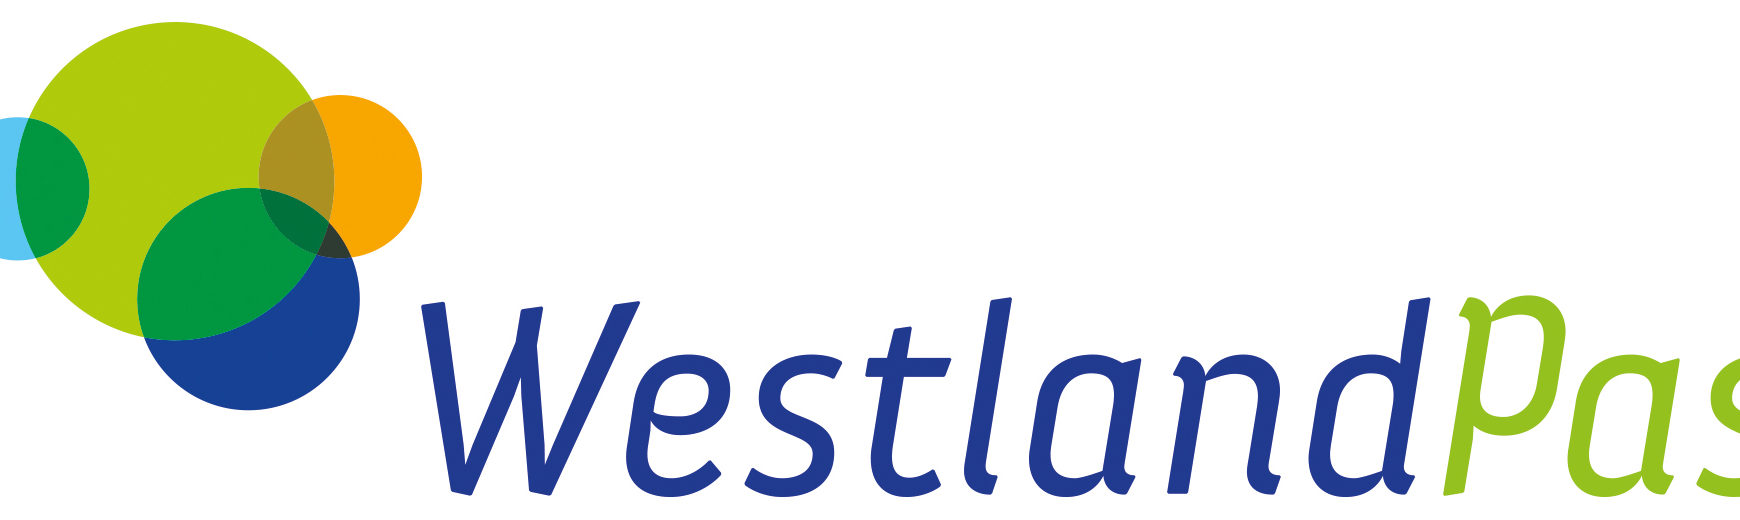 Stichting WestlandPas opgericht